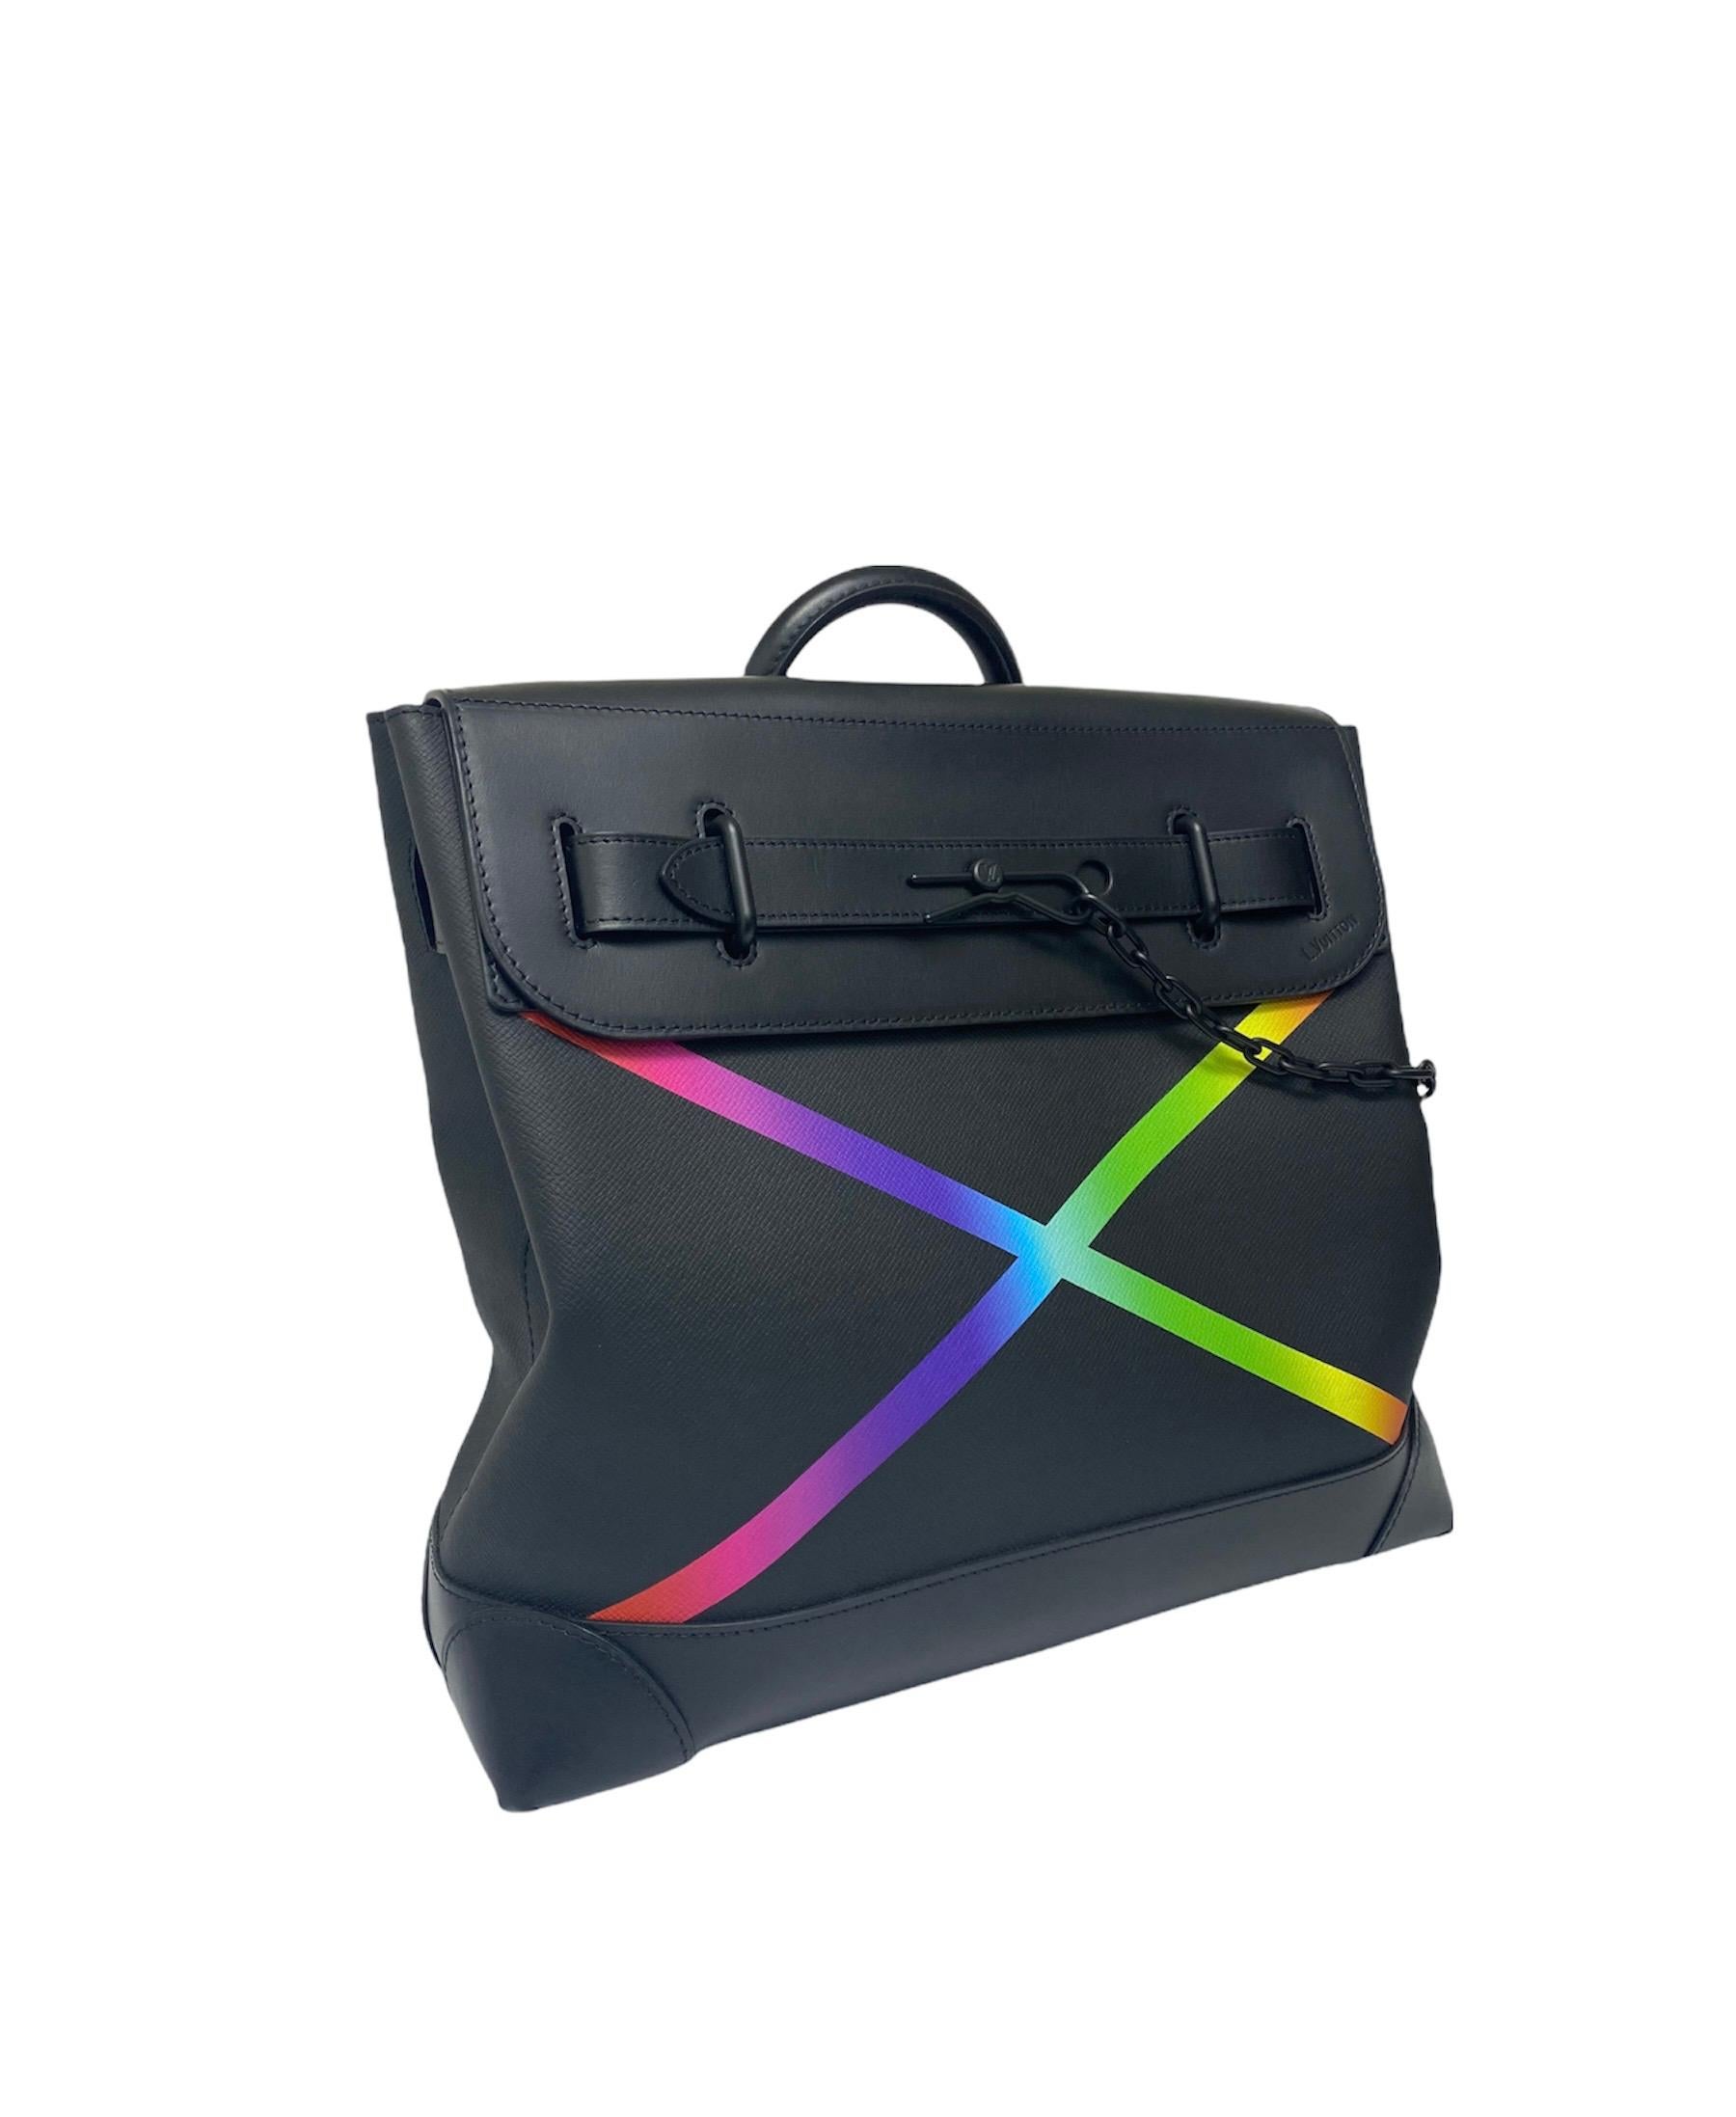 Louis Vuitton Limited Edition Taiga Rainbow x Virgil Abloh Tasche in schwarzem Leder mit schwarzer Hardware.die Tasche ist mit einer Frontklappe mit ineinandergreifenden Riemenverschluss mit Kette ausgestattet.die Innenräume sind mit einem schwarzen